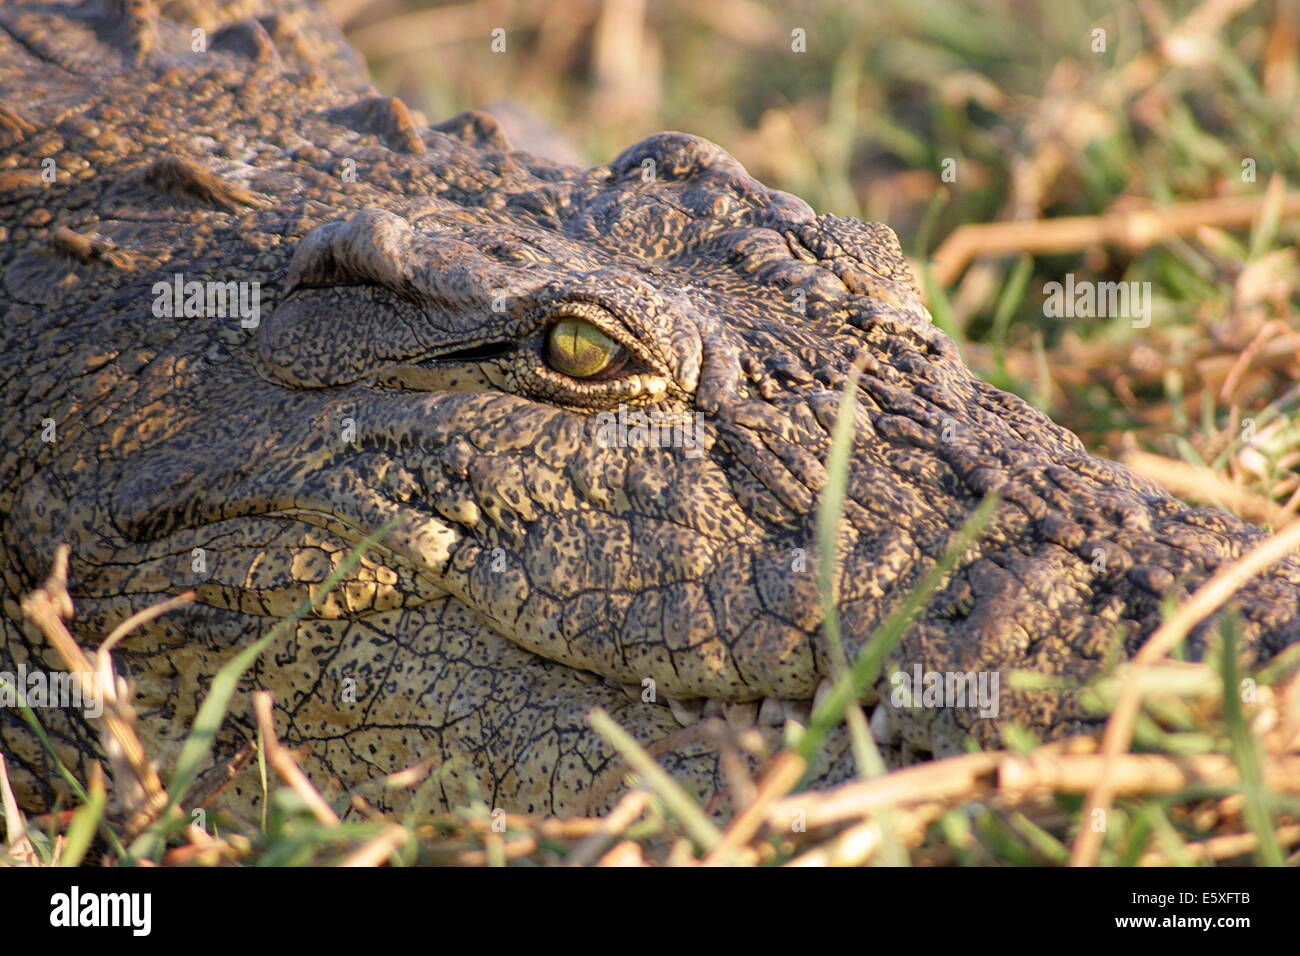 Wild Nile Crocodile in the grass. Stock Photo